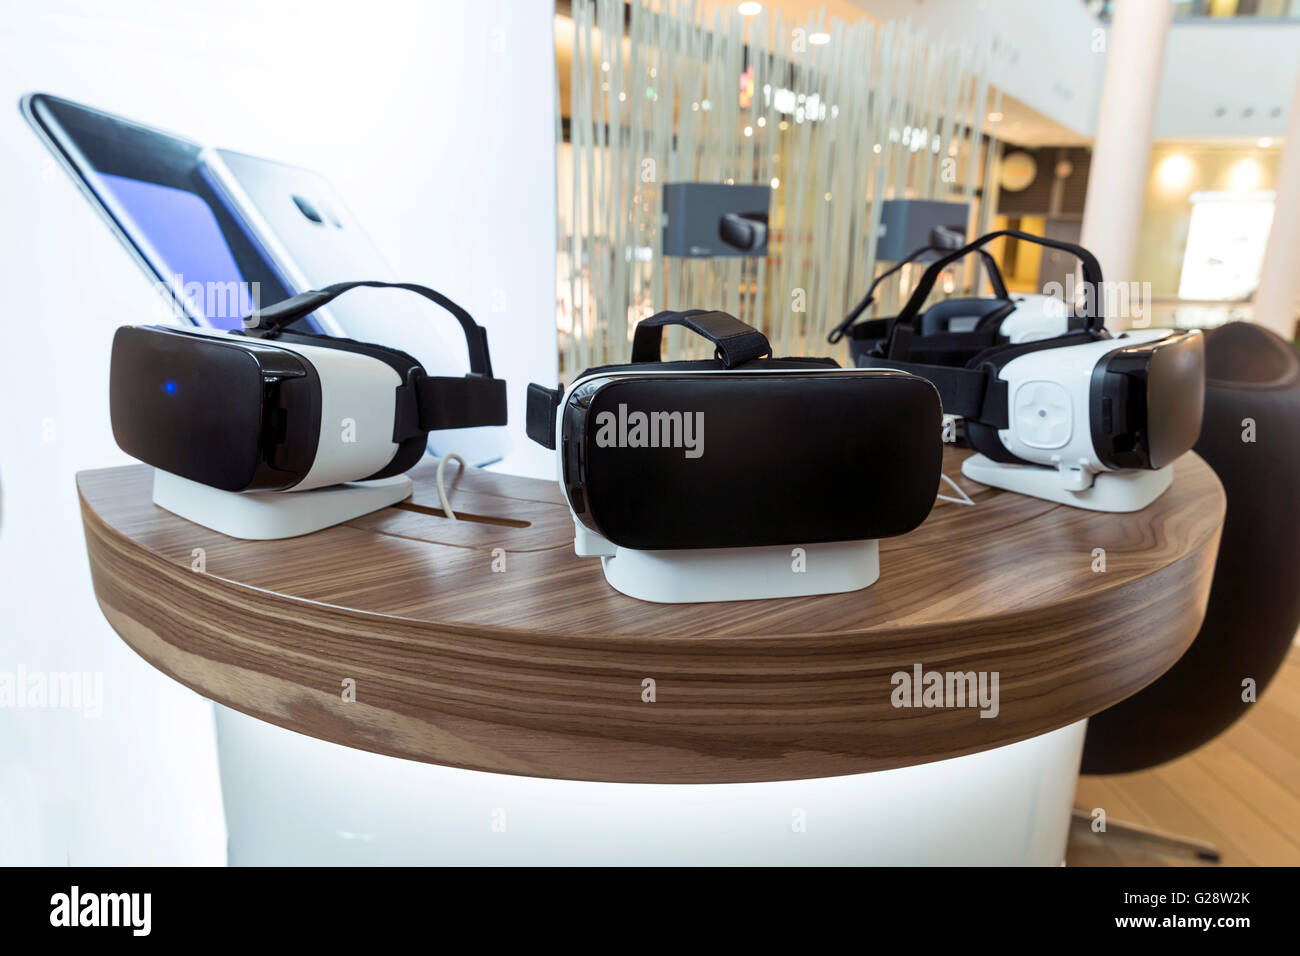 Virtuelle Realität (VR) Headsets (Gläser) auf einem Tisch. VR ist immersive Multimedia- oder Computer-simulierte Realität - ein Computer-techno Stockfoto